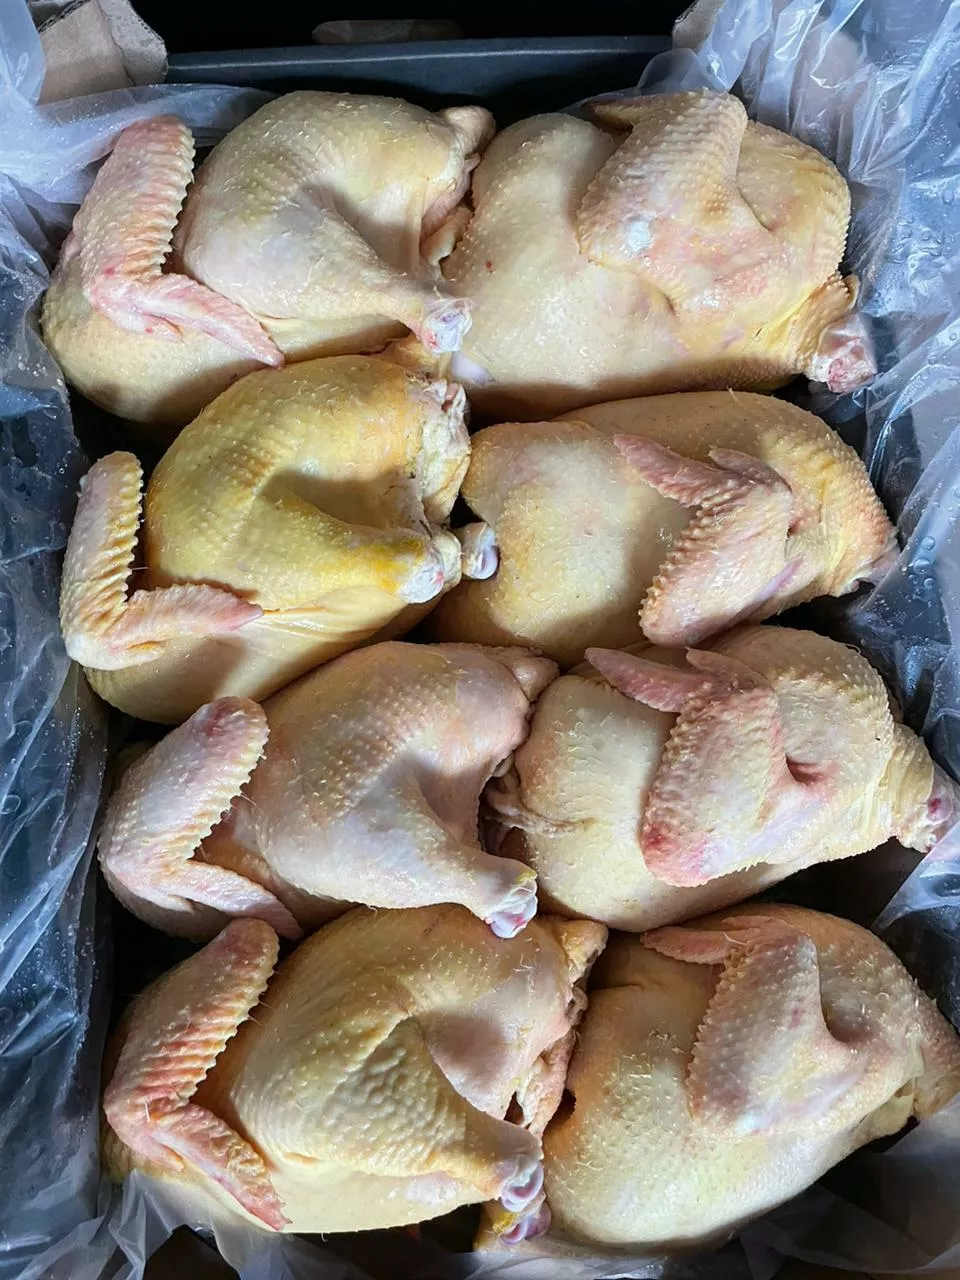 оптовая продажа мяса птицы в Нальчике и Кабардино-Балкарской республике 4